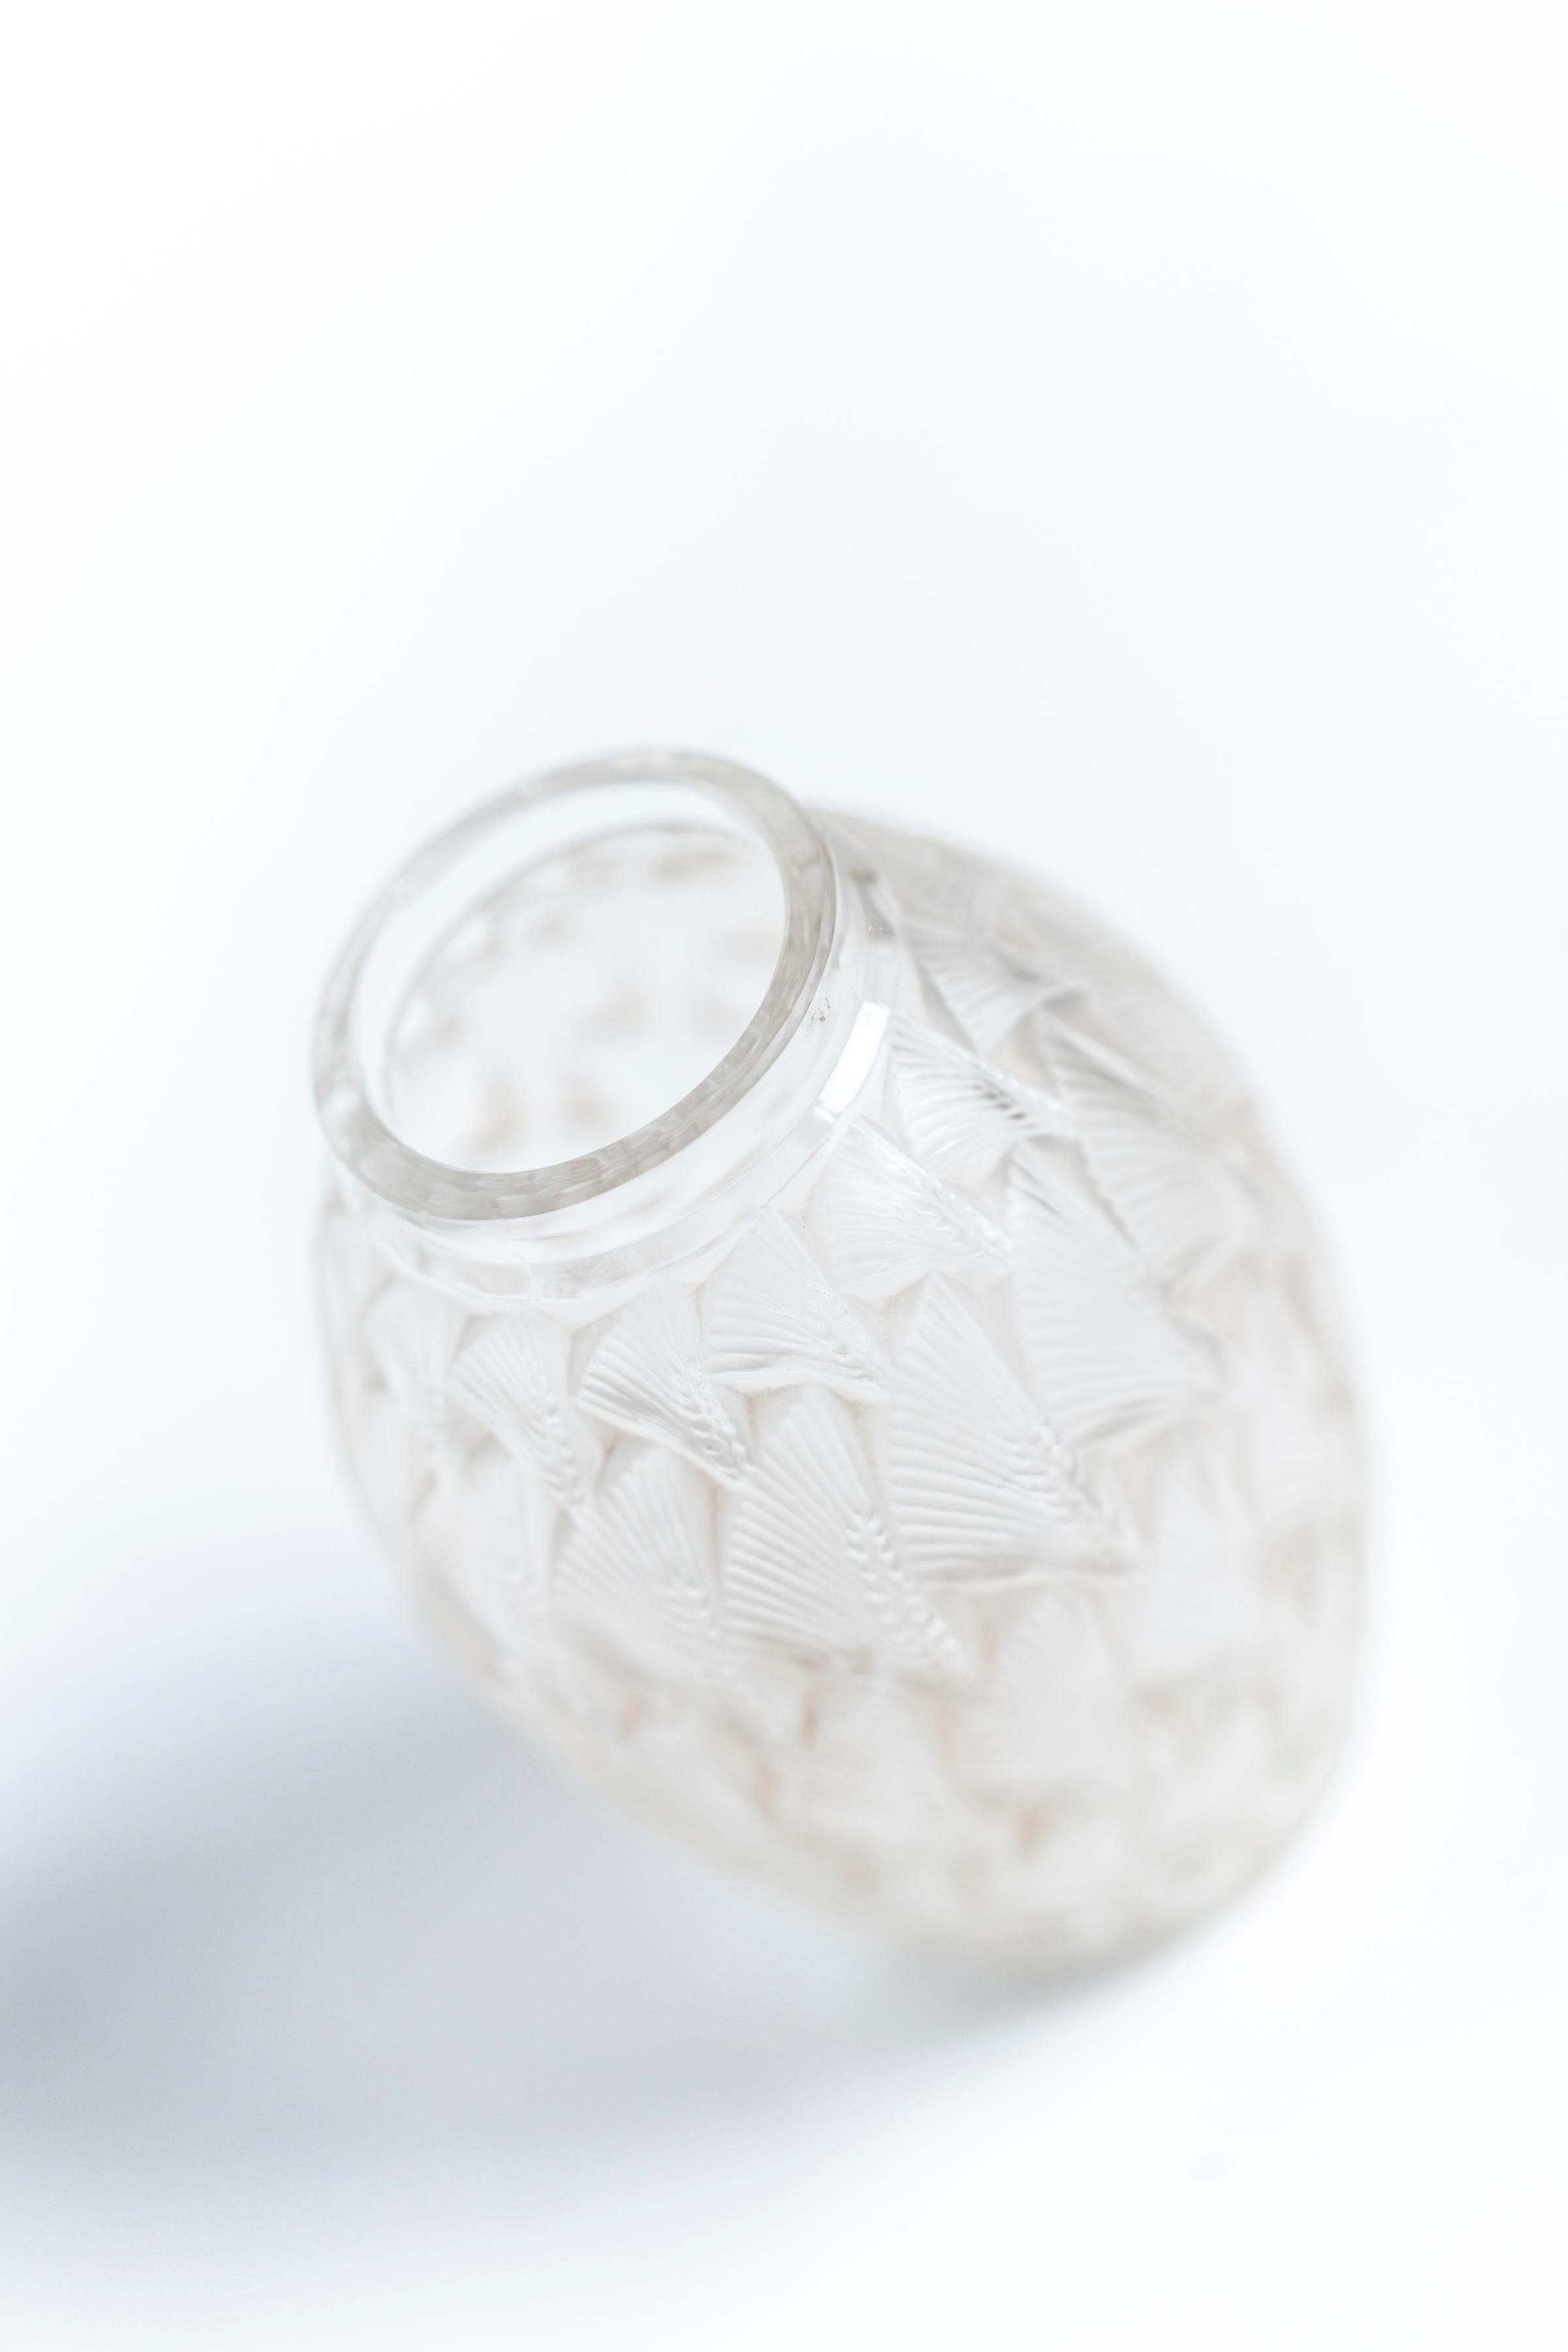 frosted cylinder vase